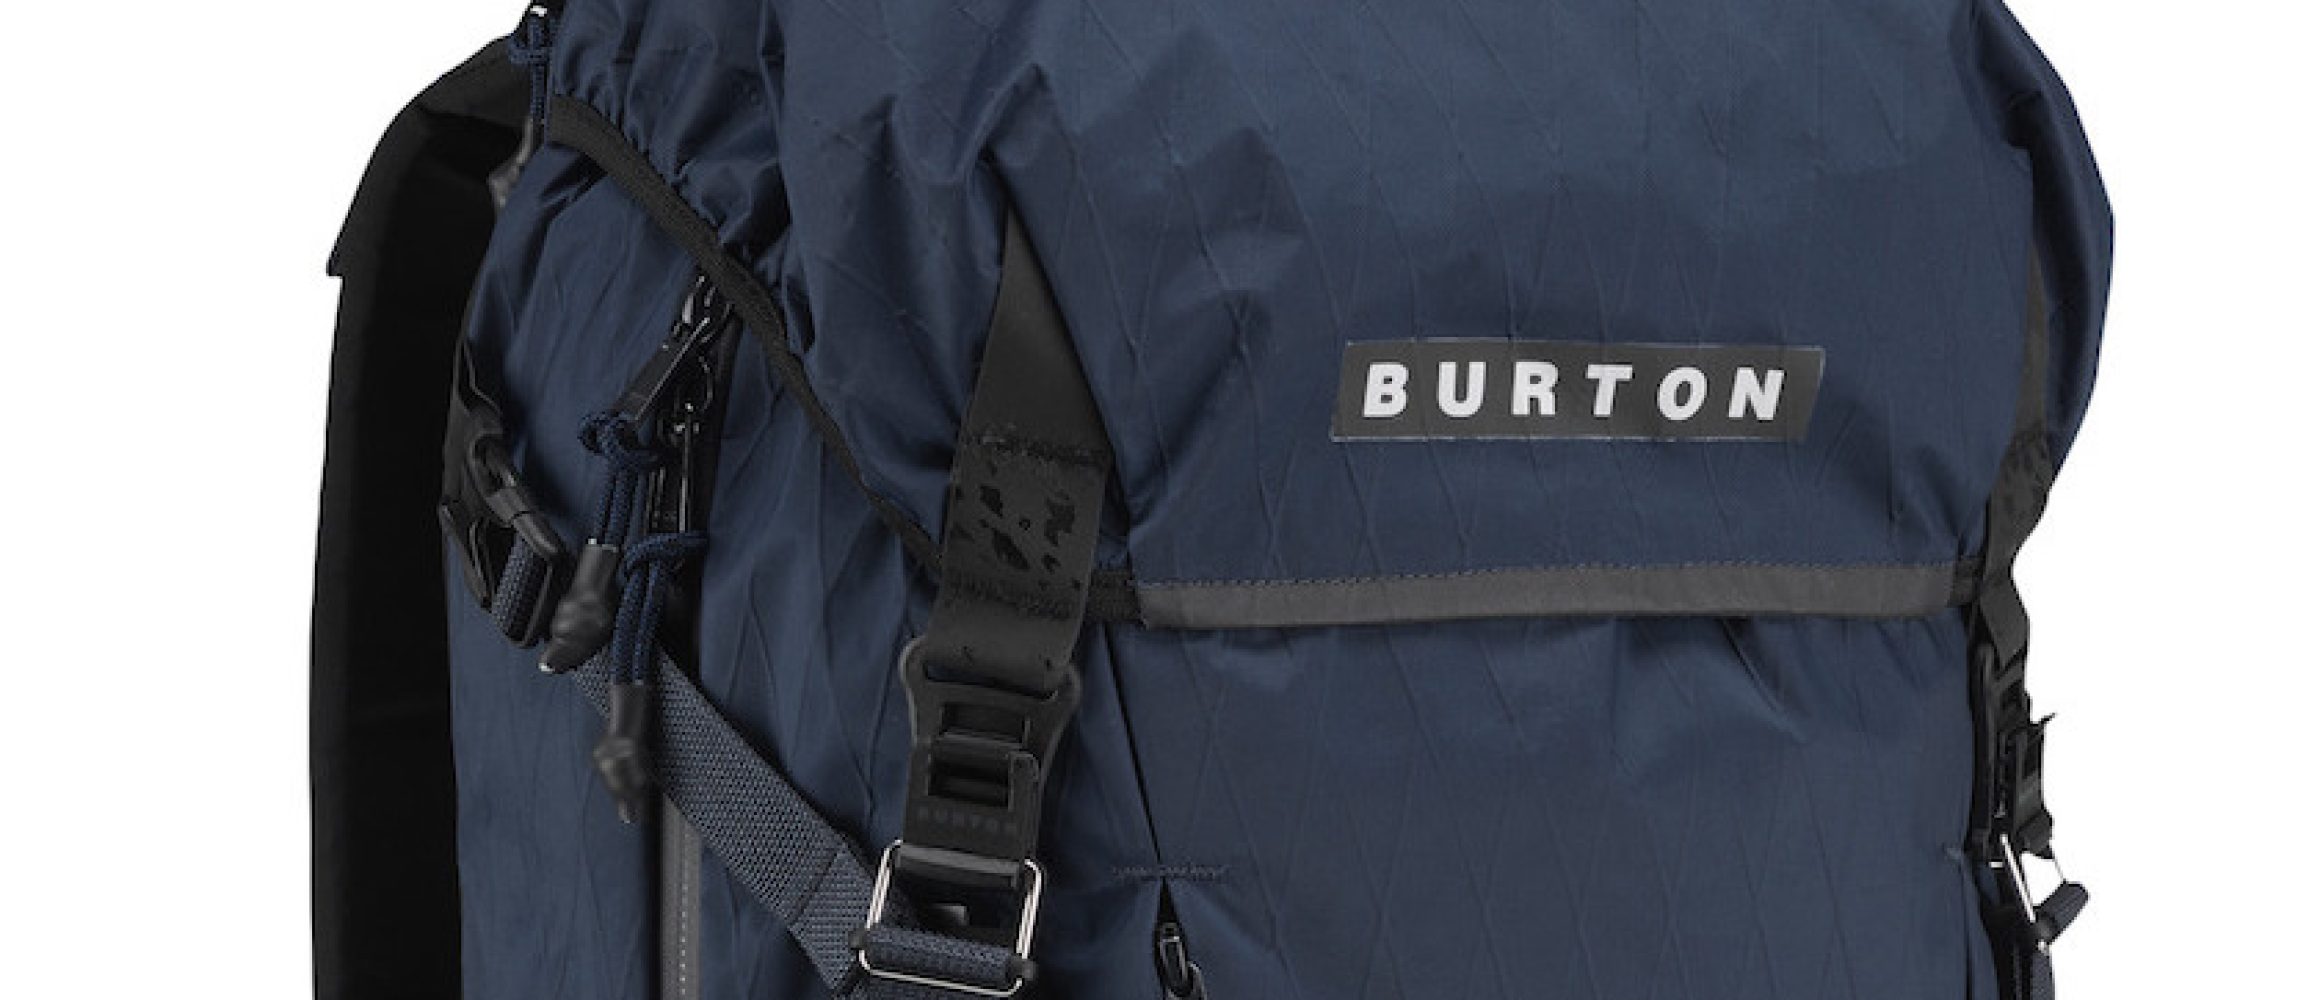 世界のスノーボードシーンを牽引する名門ブランド、BURTON（バートン）。